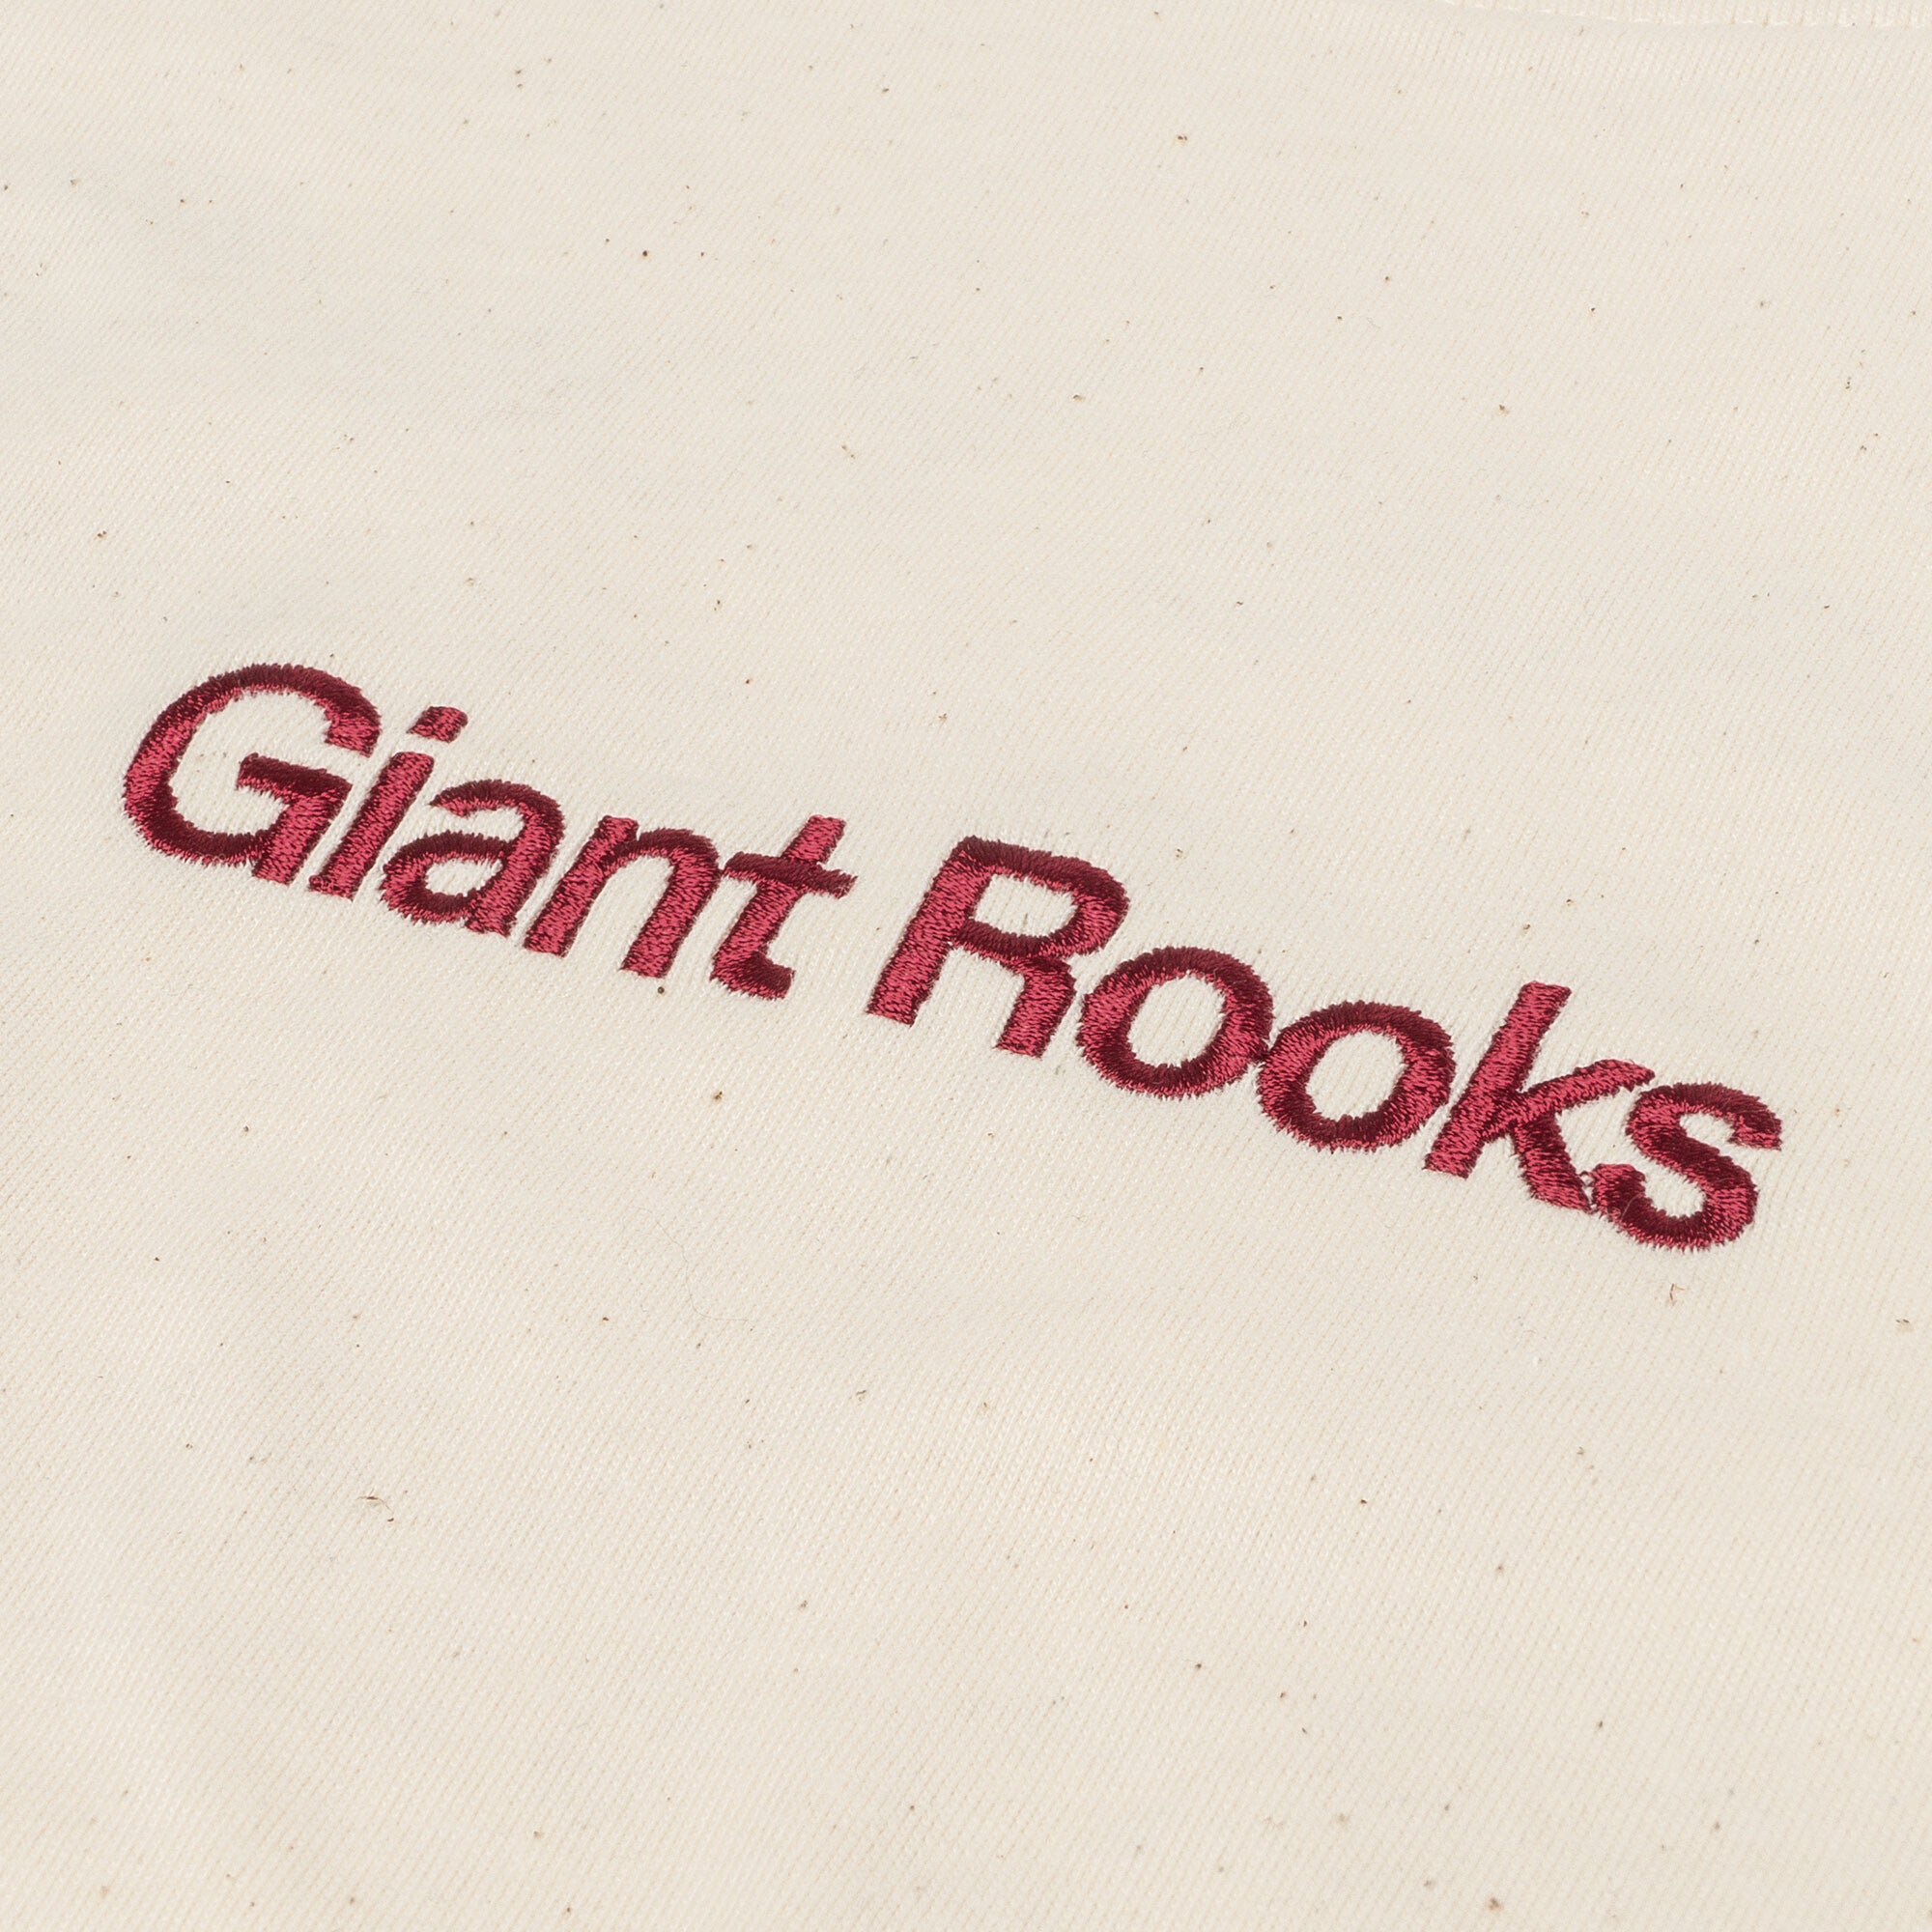 Giant Rooks - Tour 2024 (EU + UK) Shirt